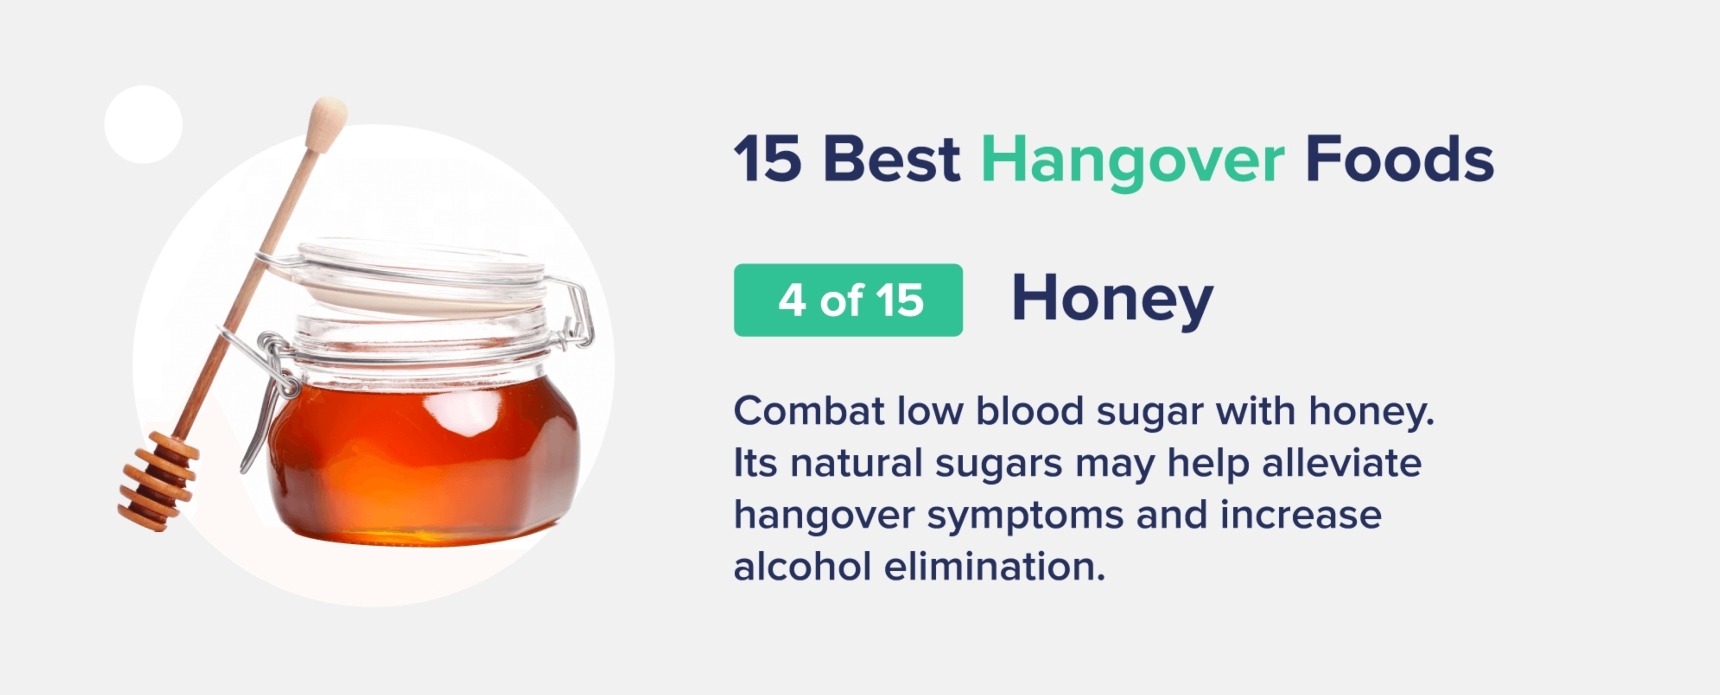 honey best hangover foods